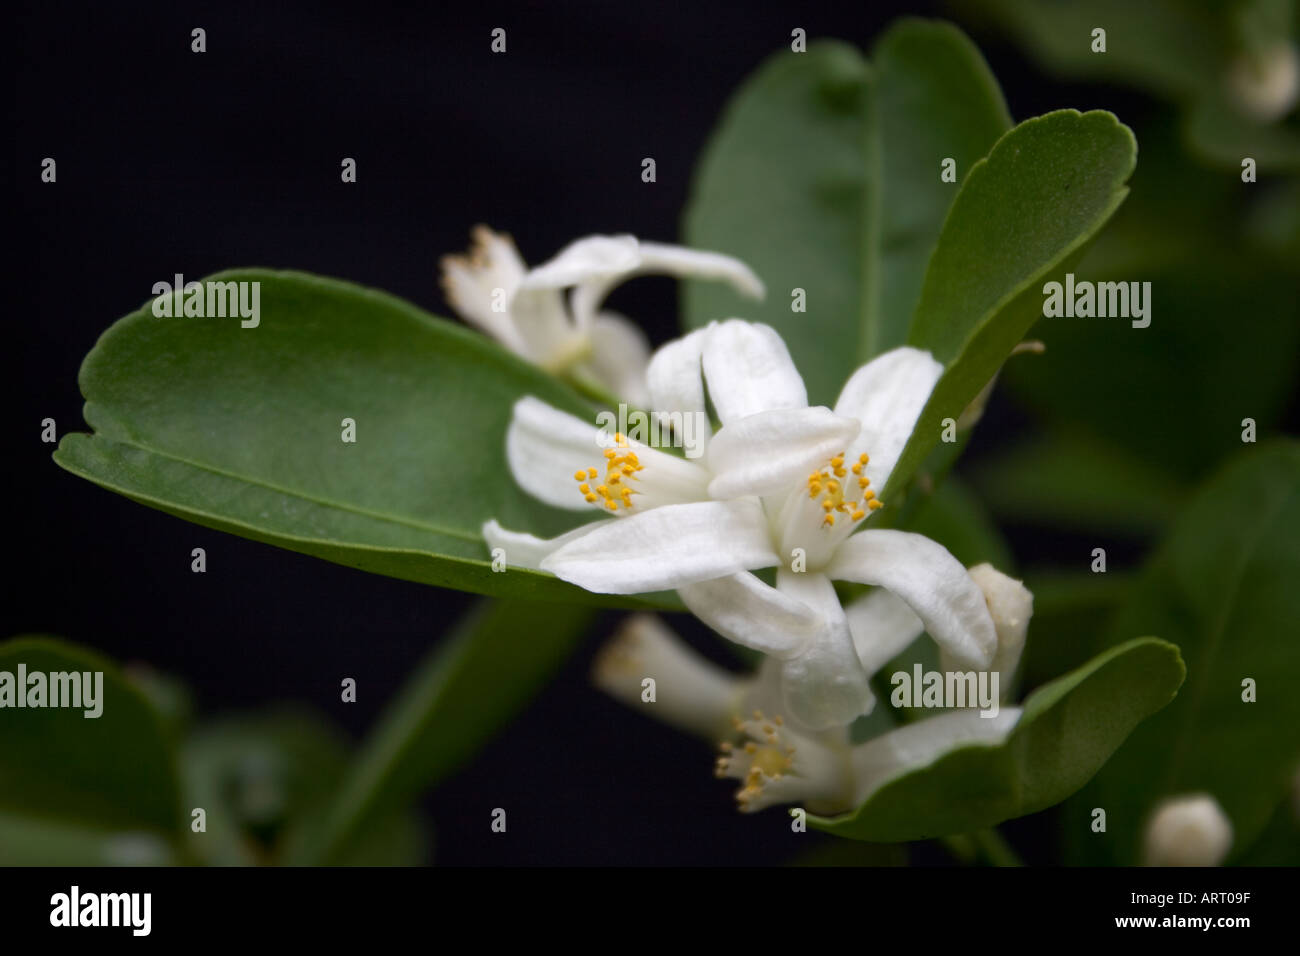 Citrofortunella microcarpa flowers Stock Photo